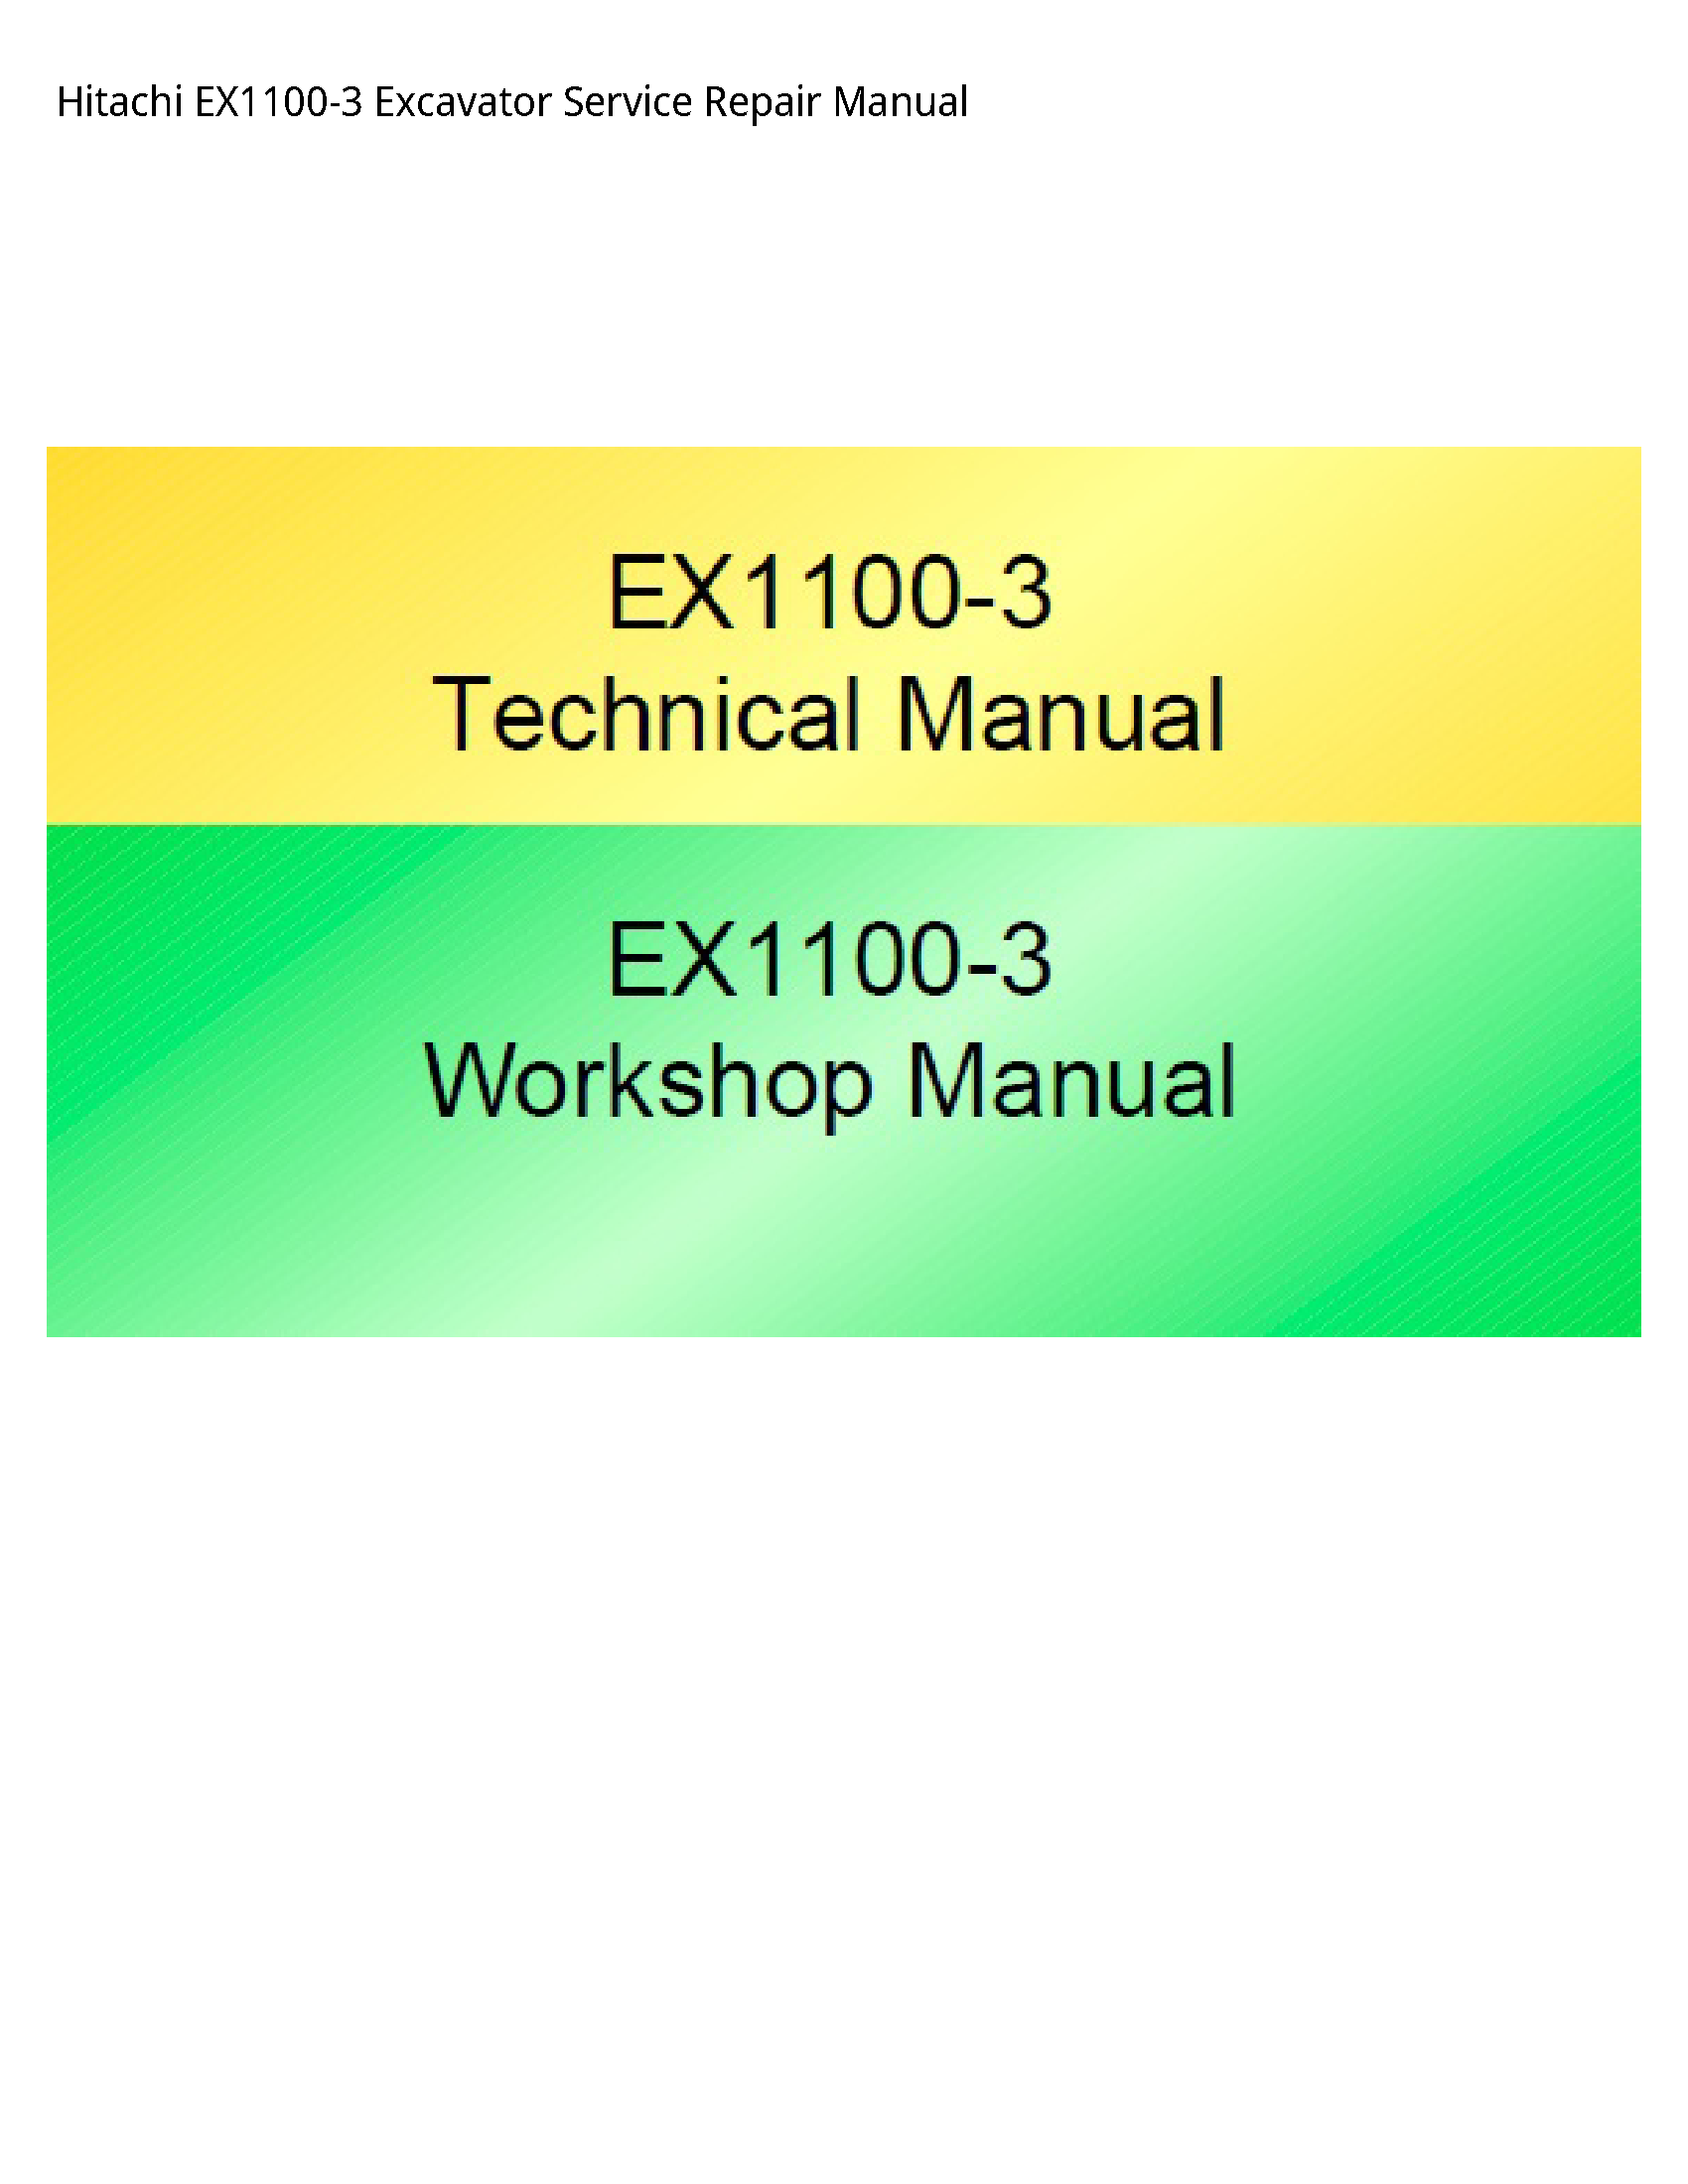 Hitachi EX1100-3 Excavator manual